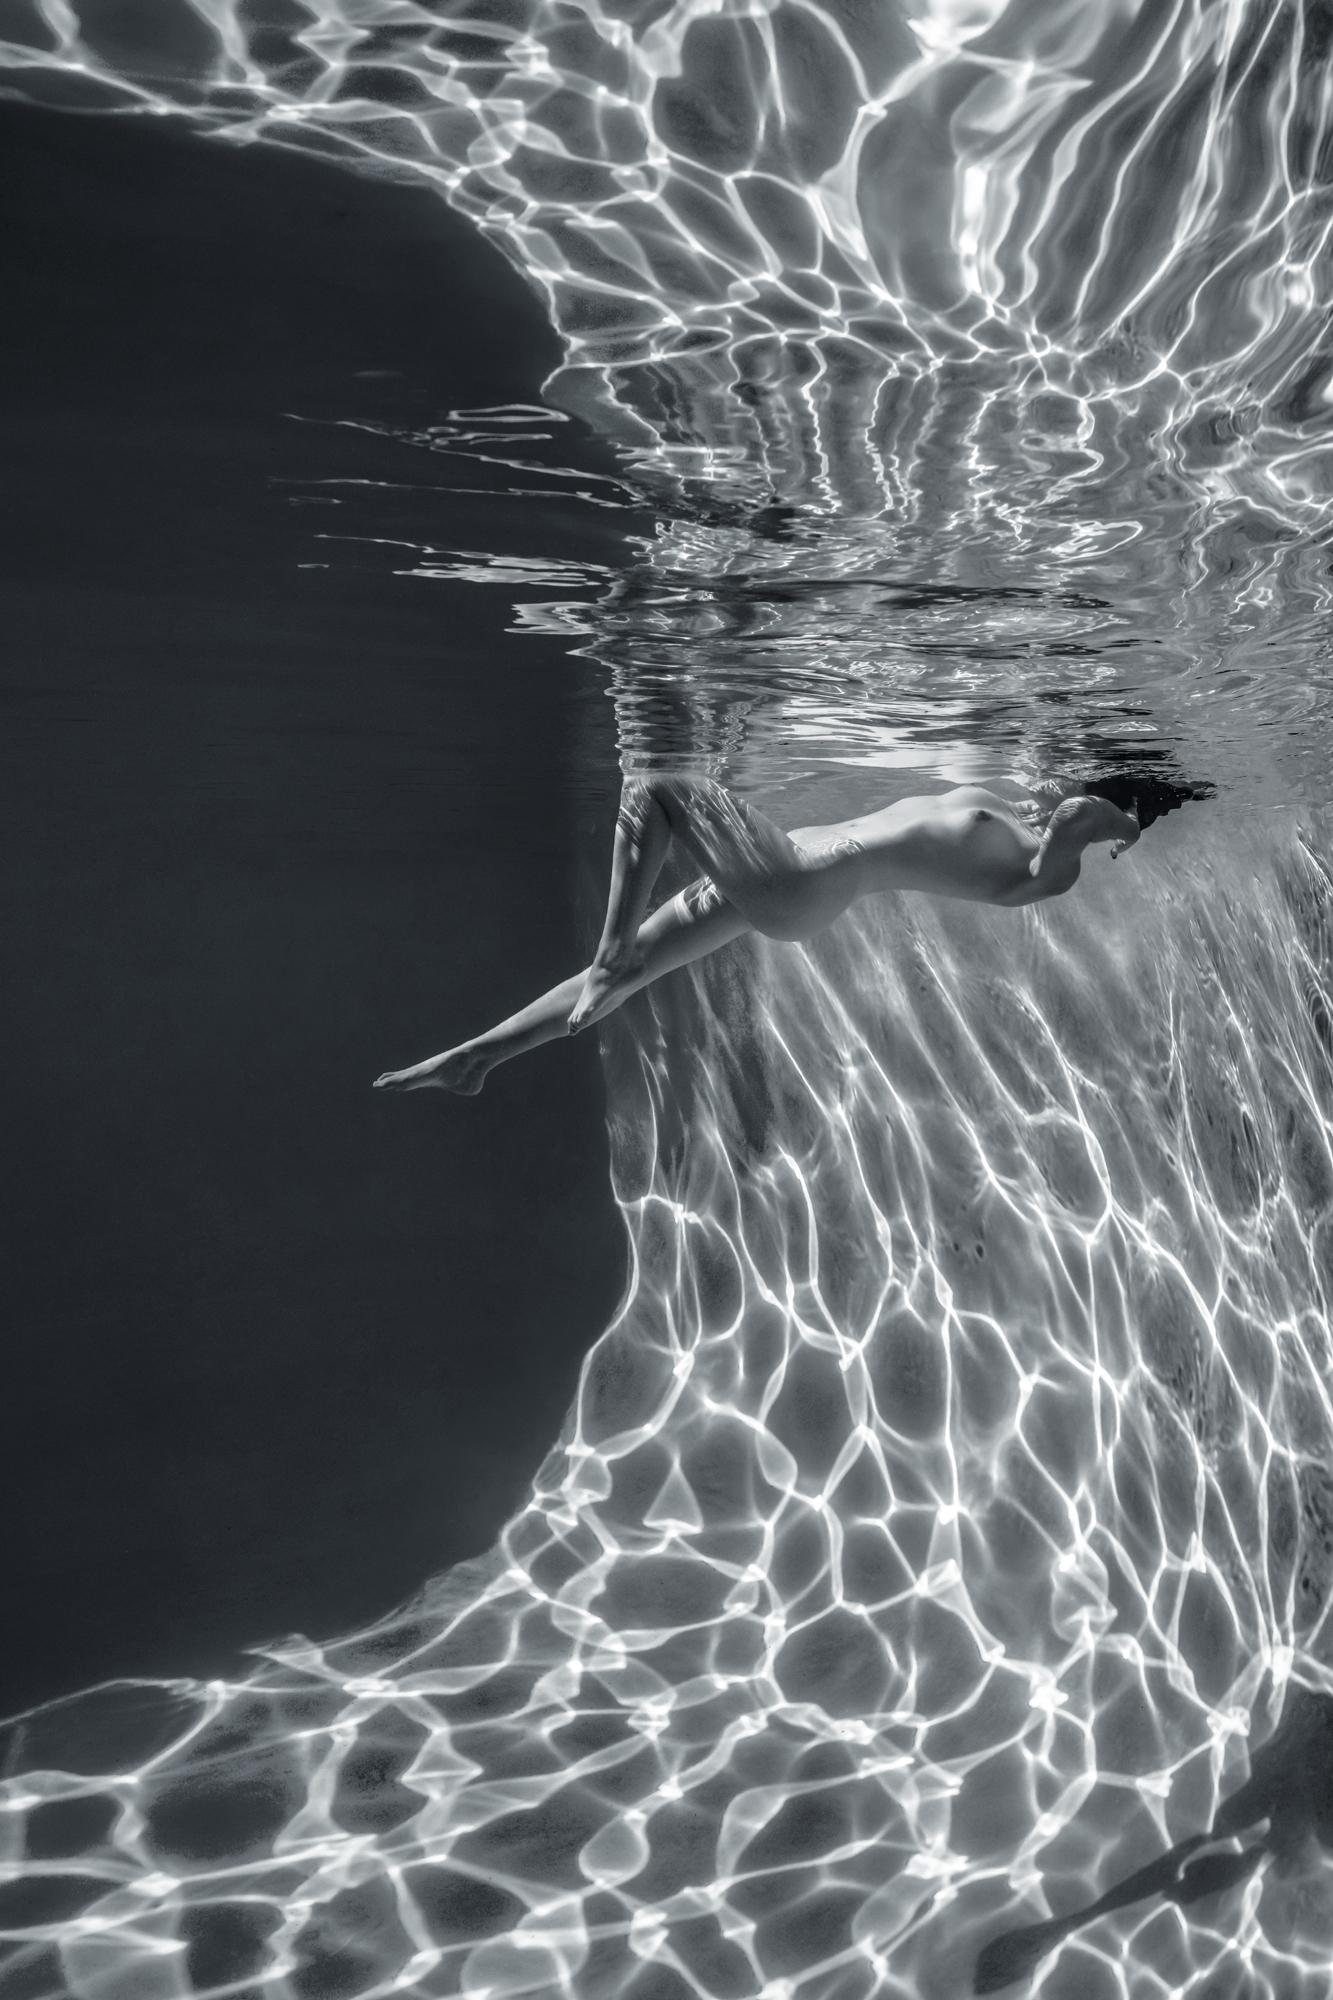 Figurative Photograph Alex Sher - Cave en marbre - photo de nu sous l'eau - impression sur aluminium 12 x 8 po.